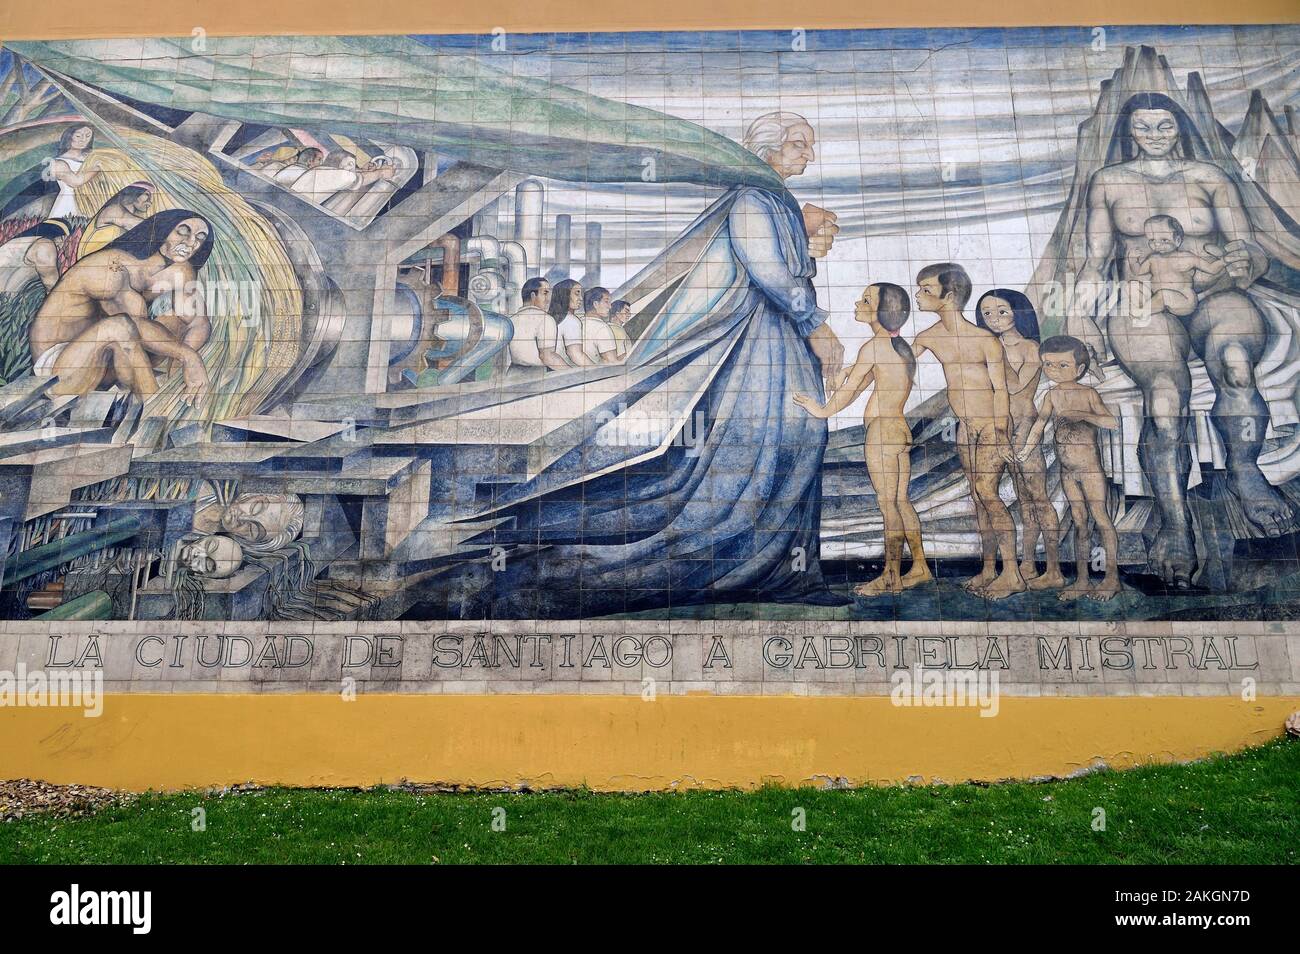 Il Cile, Santiago de Chile, murale dall artista Fernando Daza Osorio situato sulle pendici della collina di Santa Lucia, in omaggio a Gabriela Mistral, poeta cileno e vincitore del Premio Nobel per la letteratura Foto Stock